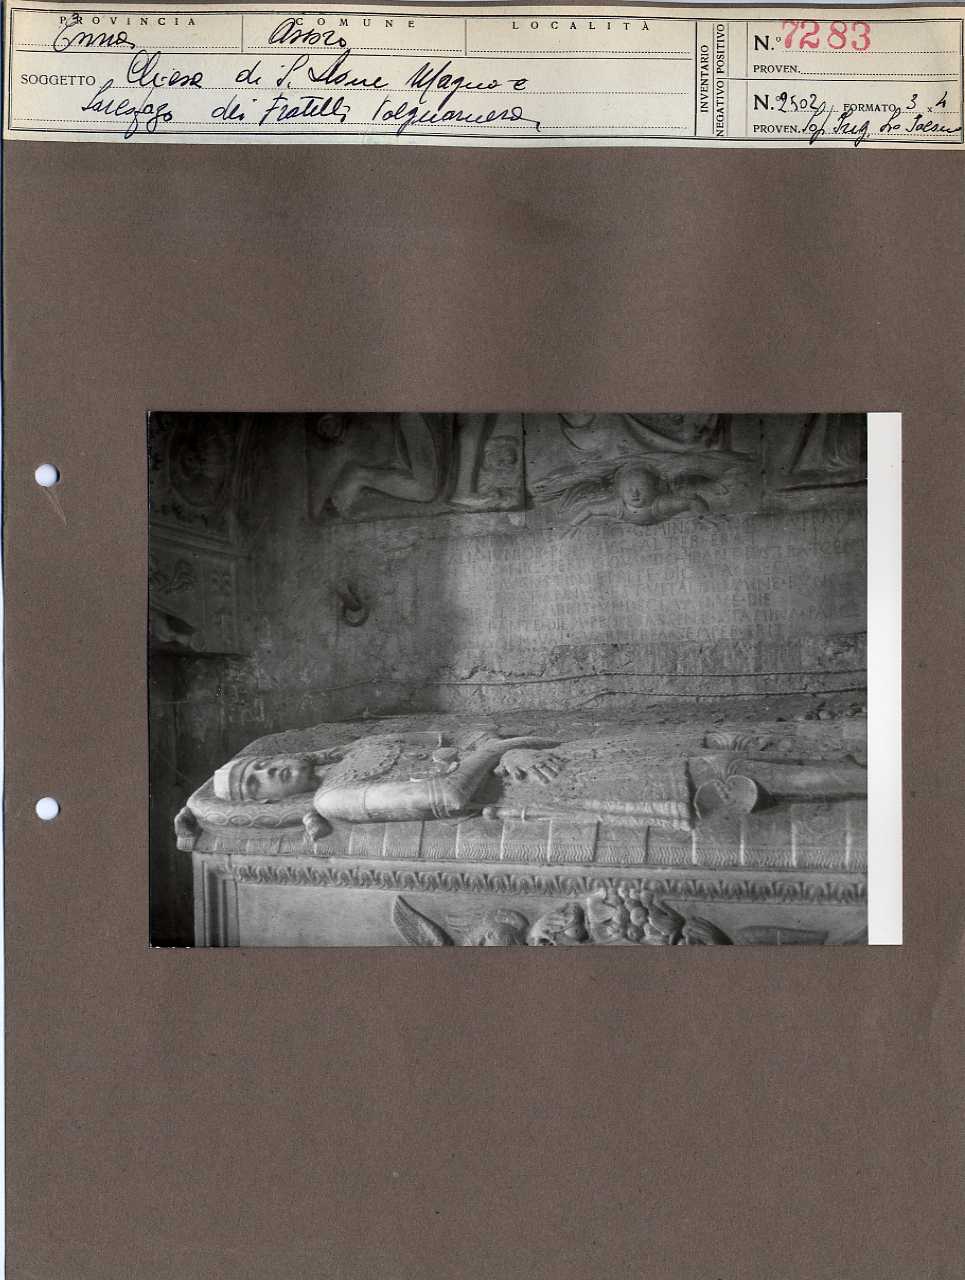 Sicilia - Enna <provincia> - Assoro - Chiese - Monumenti sepolcrali (positivo, elemento-parte componente, scheda di supporto) di Anonimo <1951 - 2000> (terzo quarto XX)